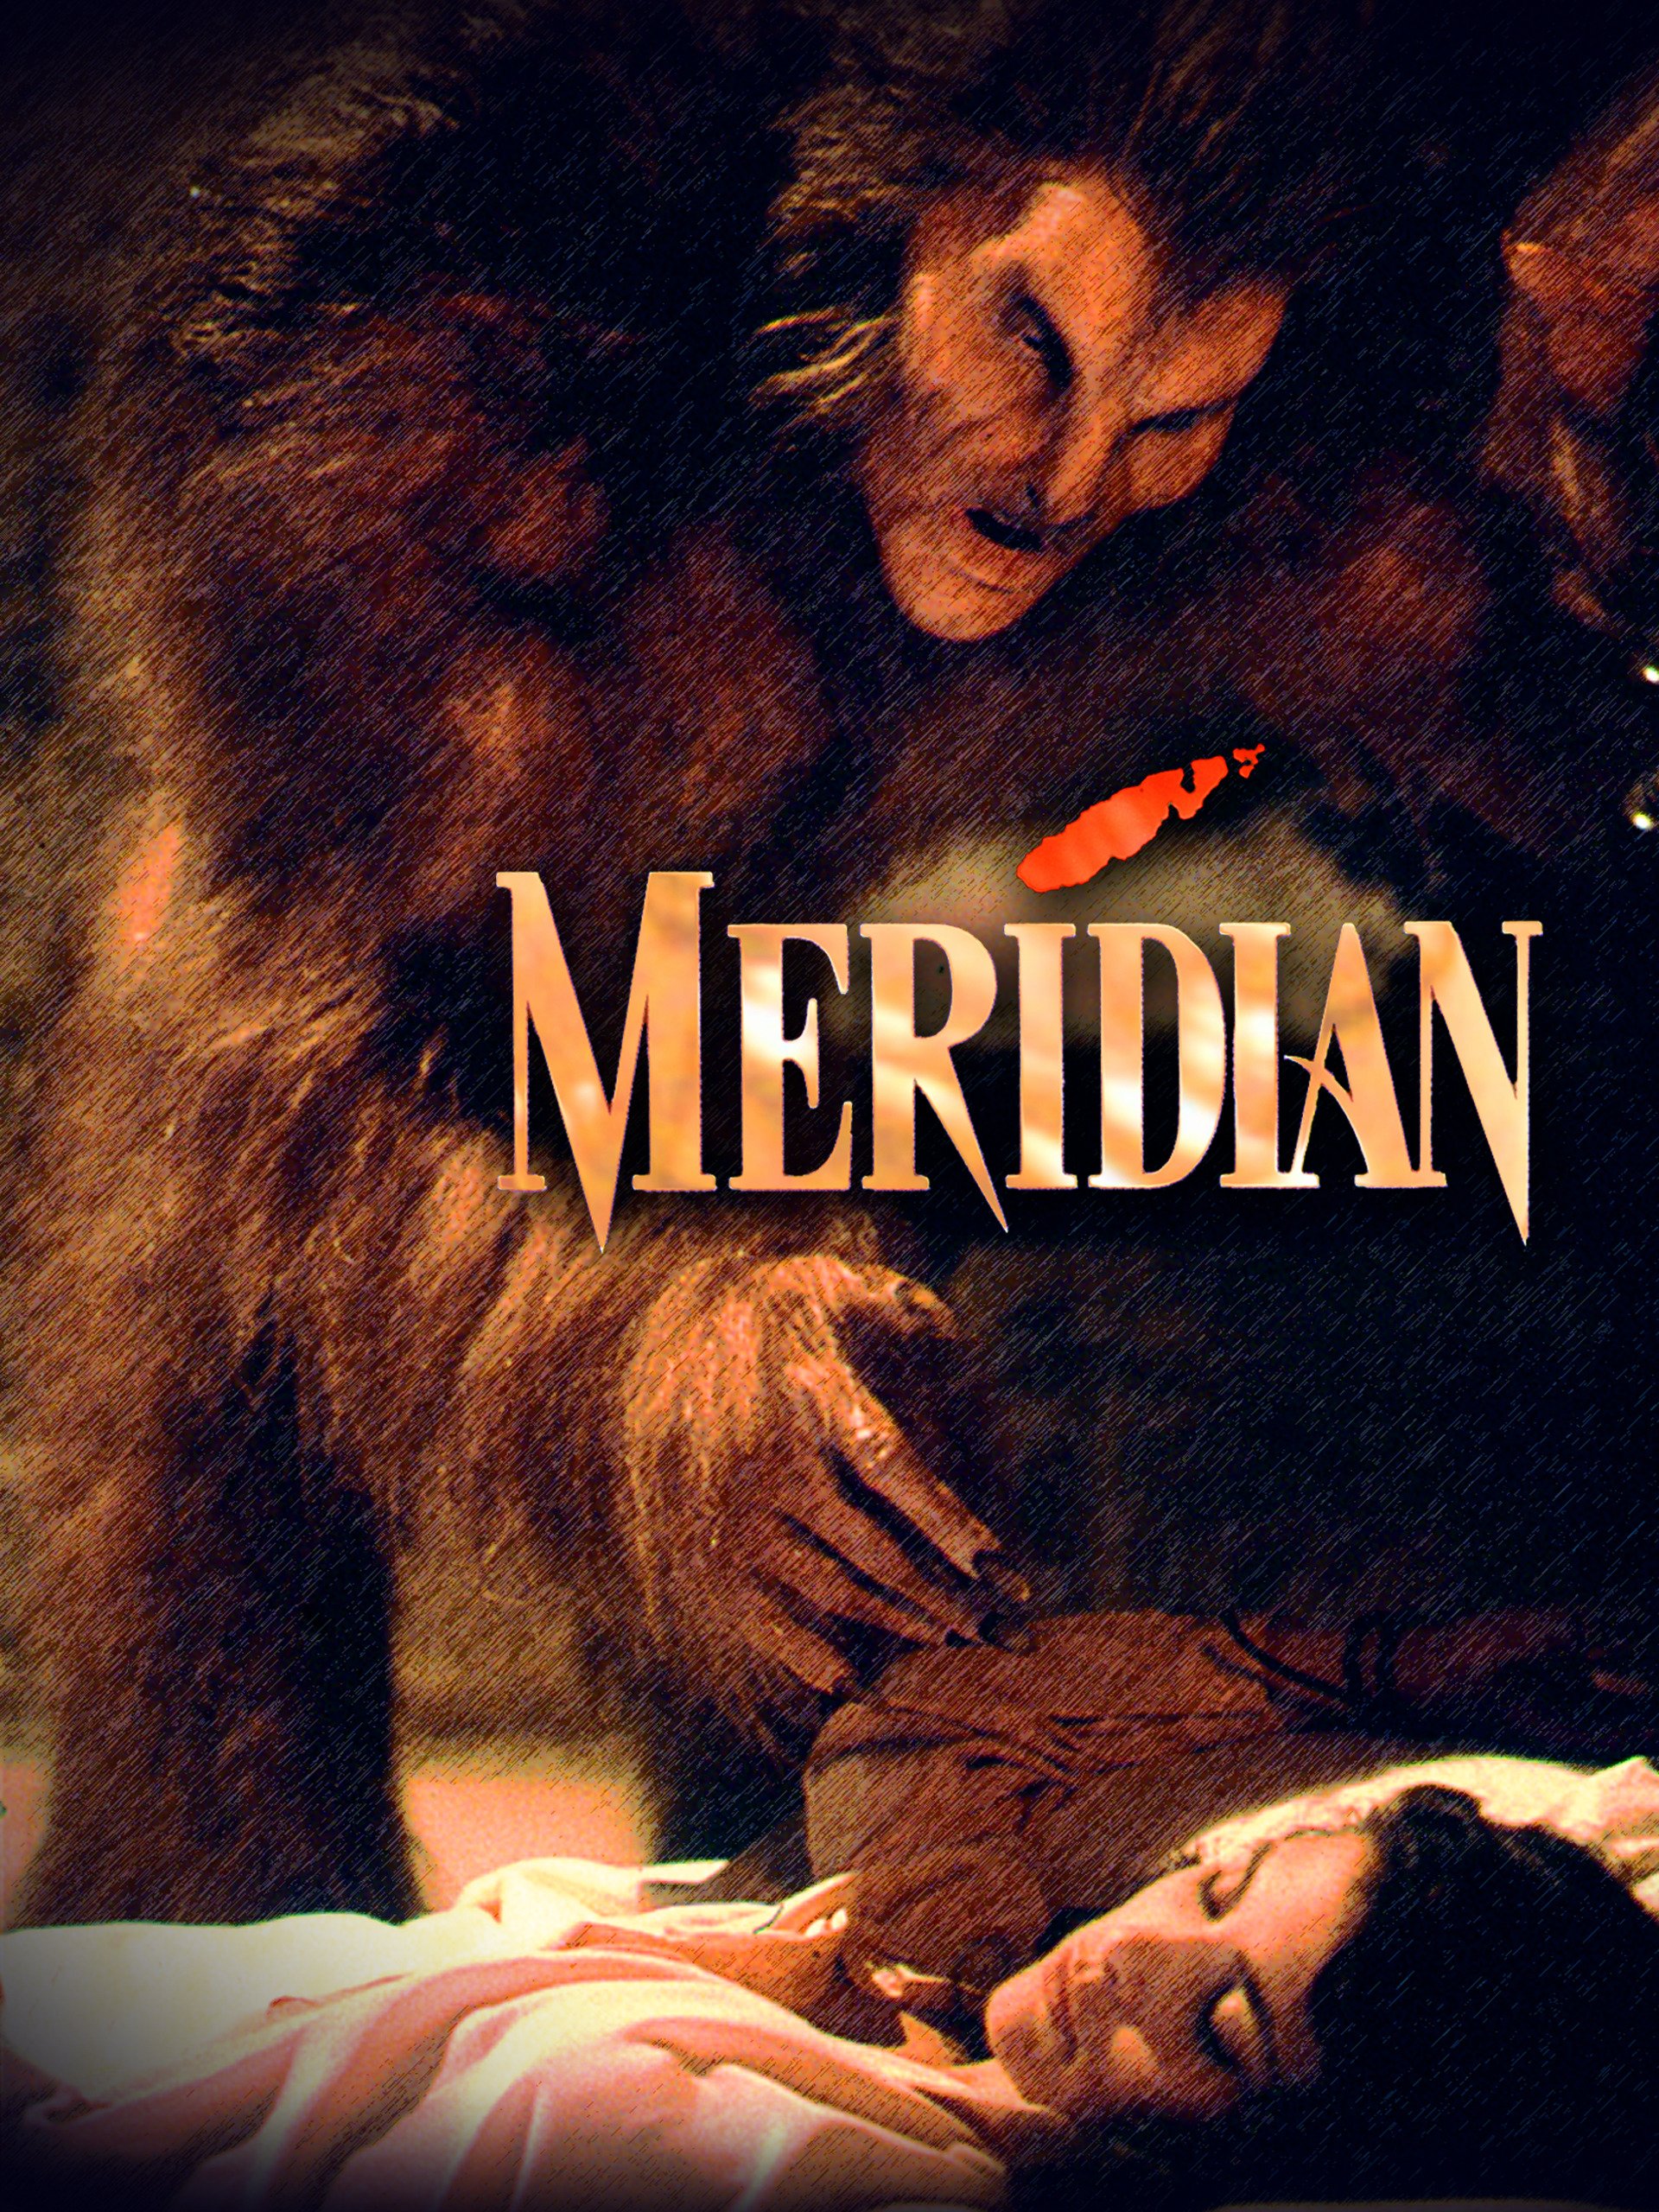 Meridian [HD] (1990)